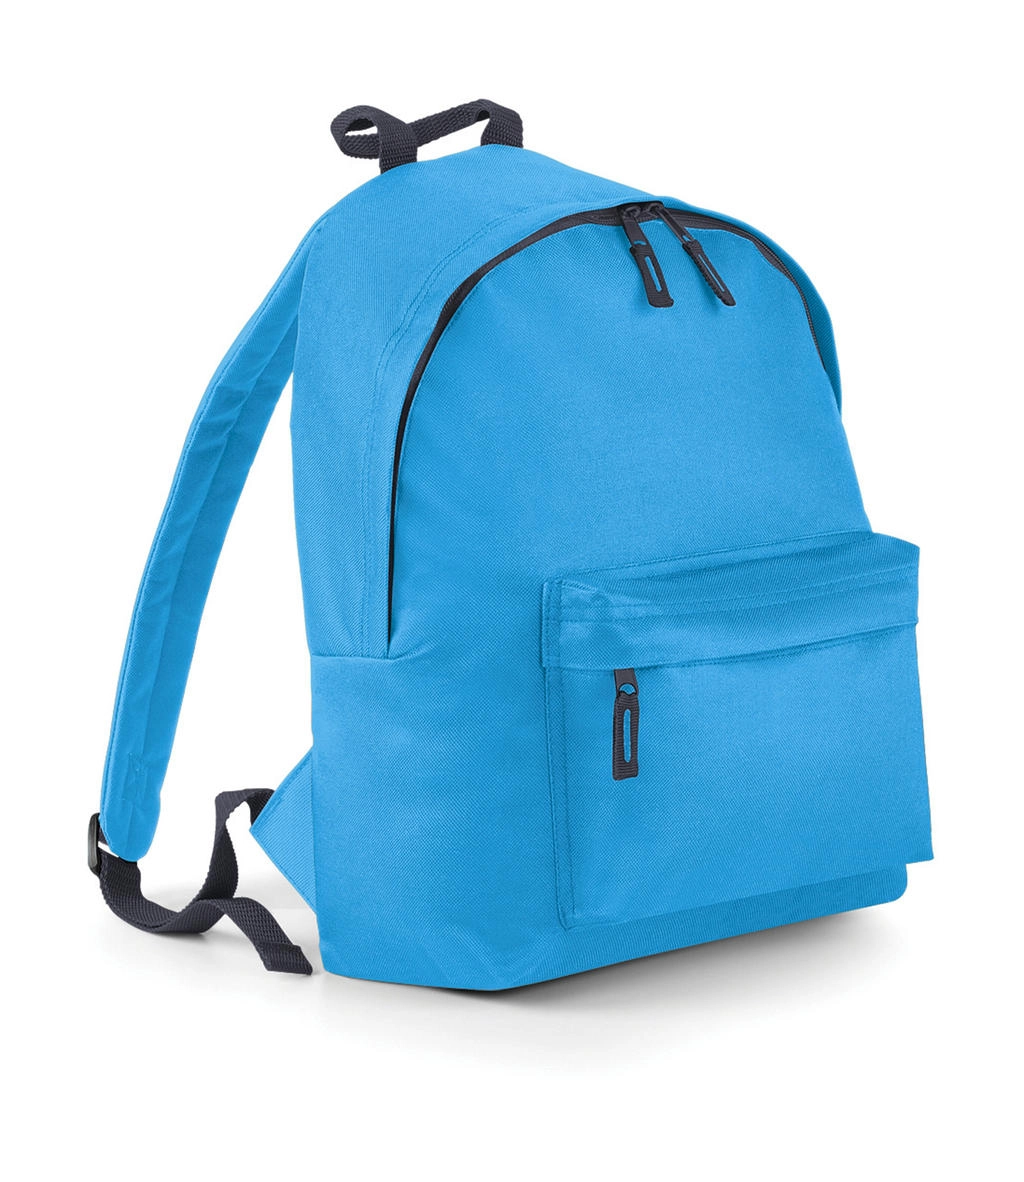 Junior Fashion Backpack zum Besticken und Bedrucken in der Farbe Surf Blue/Graphite Grey mit Ihren Logo, Schriftzug oder Motiv.